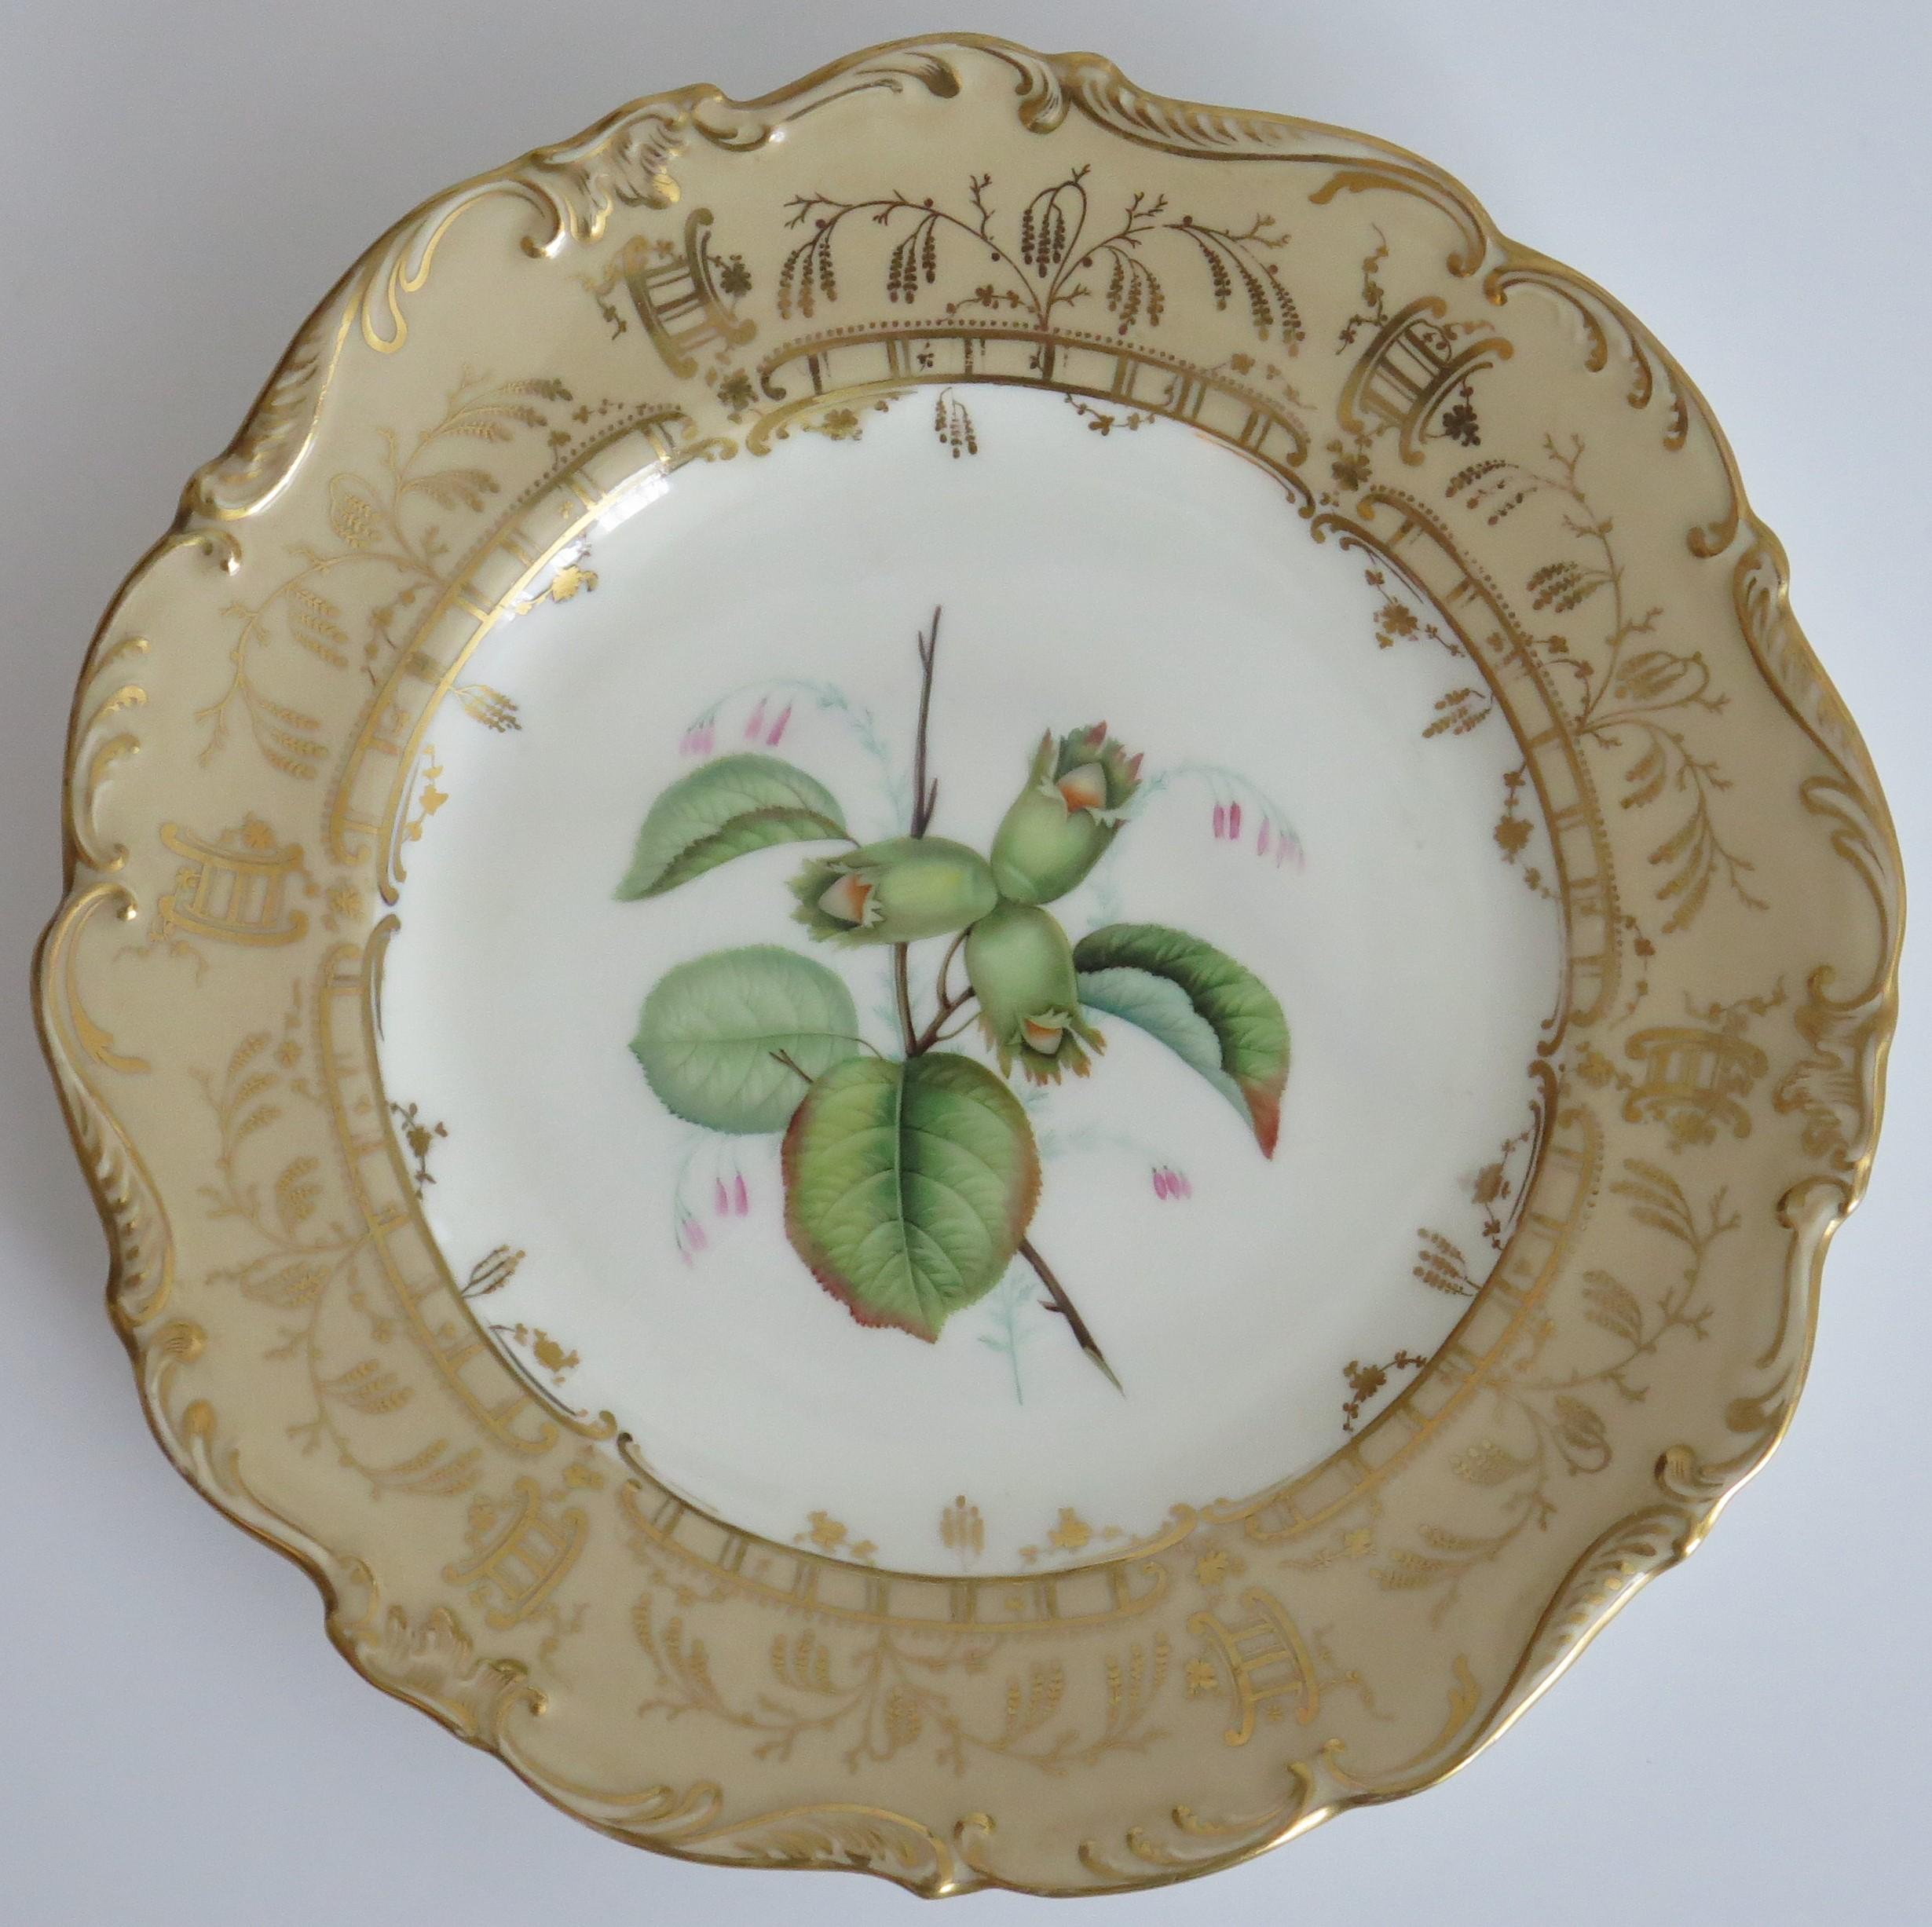 Il s'agit d'une assiette botanique de très haute qualité, finement peinte à la main, que nous attribuons à H & R Daniel ou Samuel Alcock, des poteries du Staffordshire, en Angleterre, et qui date du début du 19e siècle, de la fin de la période